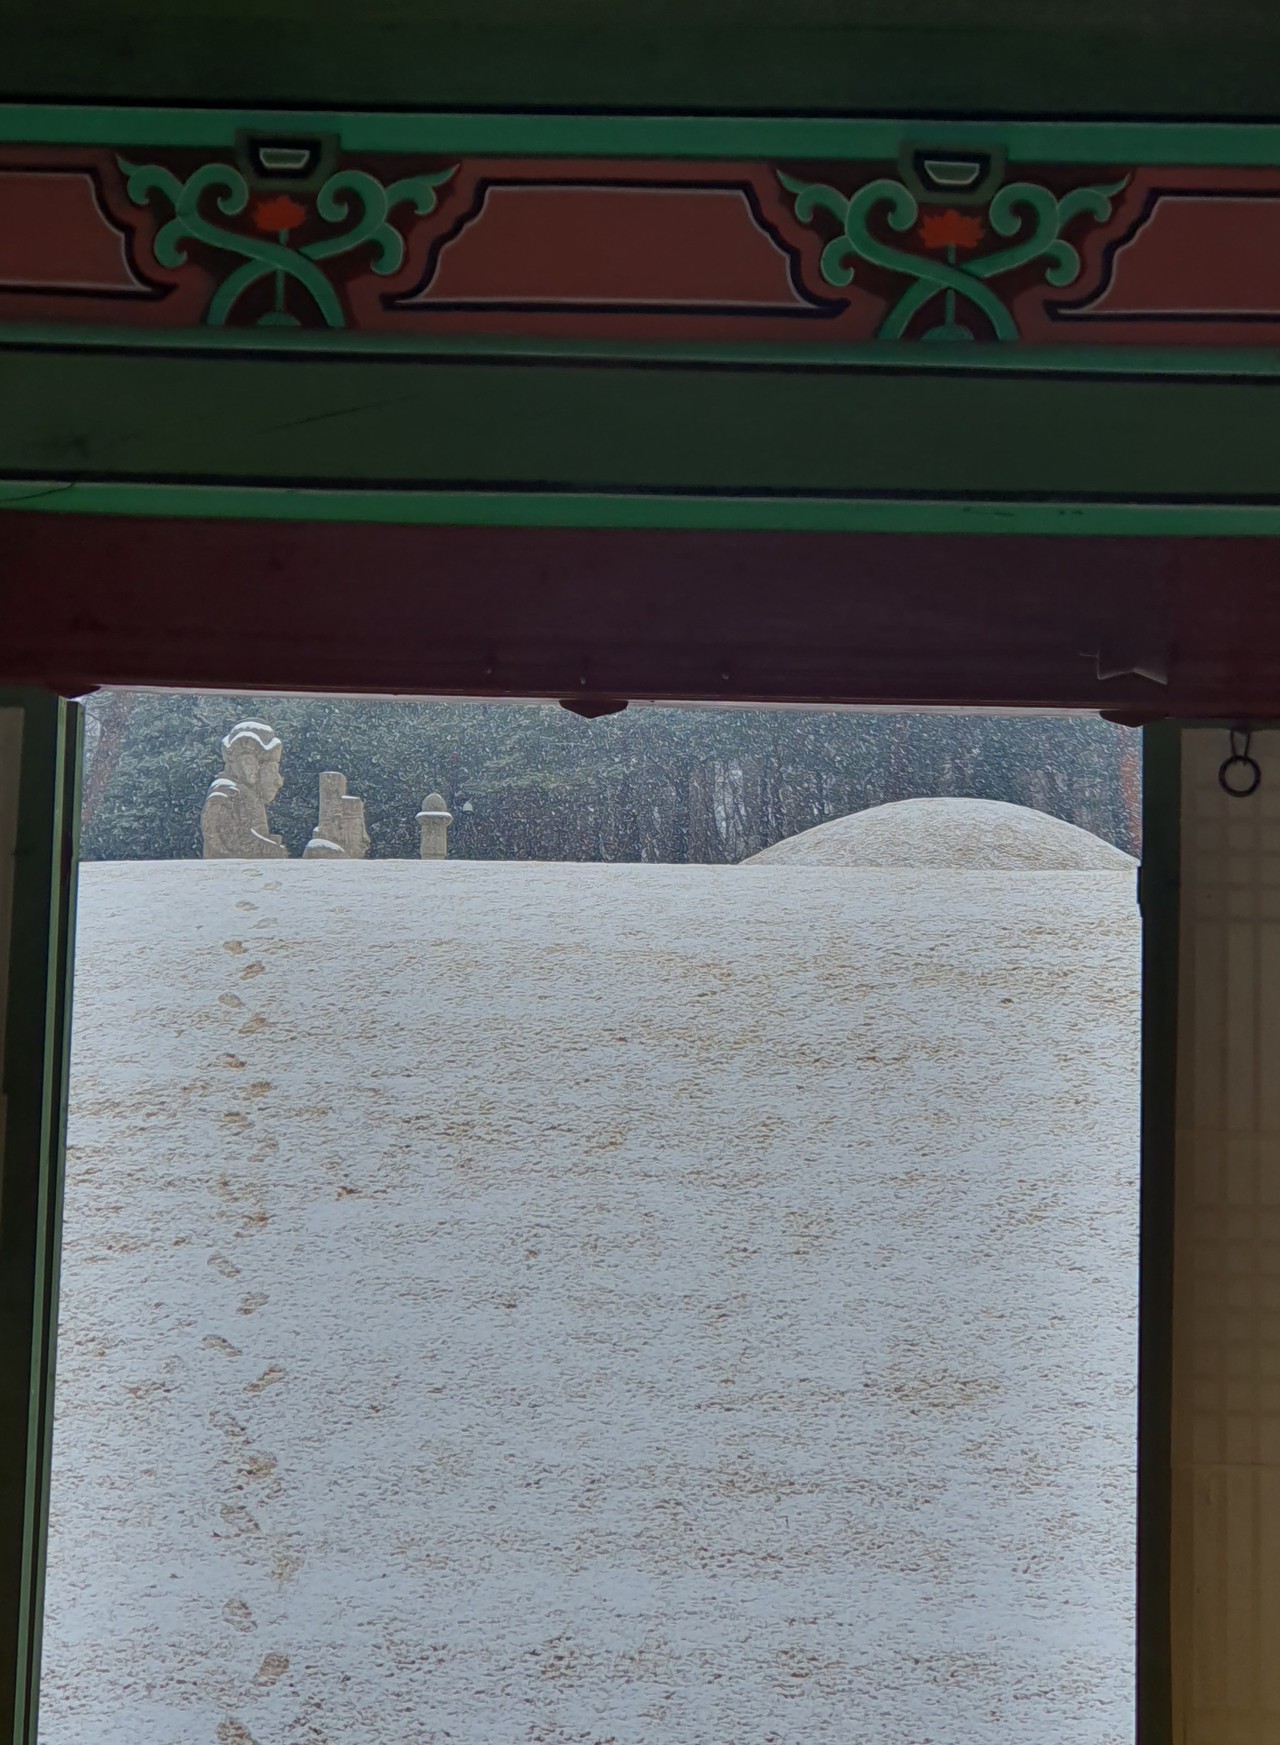 정자각 신문(神門)을 통해 본 효릉의 능침. 누군가의 발자국을 남긴 눈내리는 능침이 오백 년의 세월을 담은 듯 고요하고 평안하다.